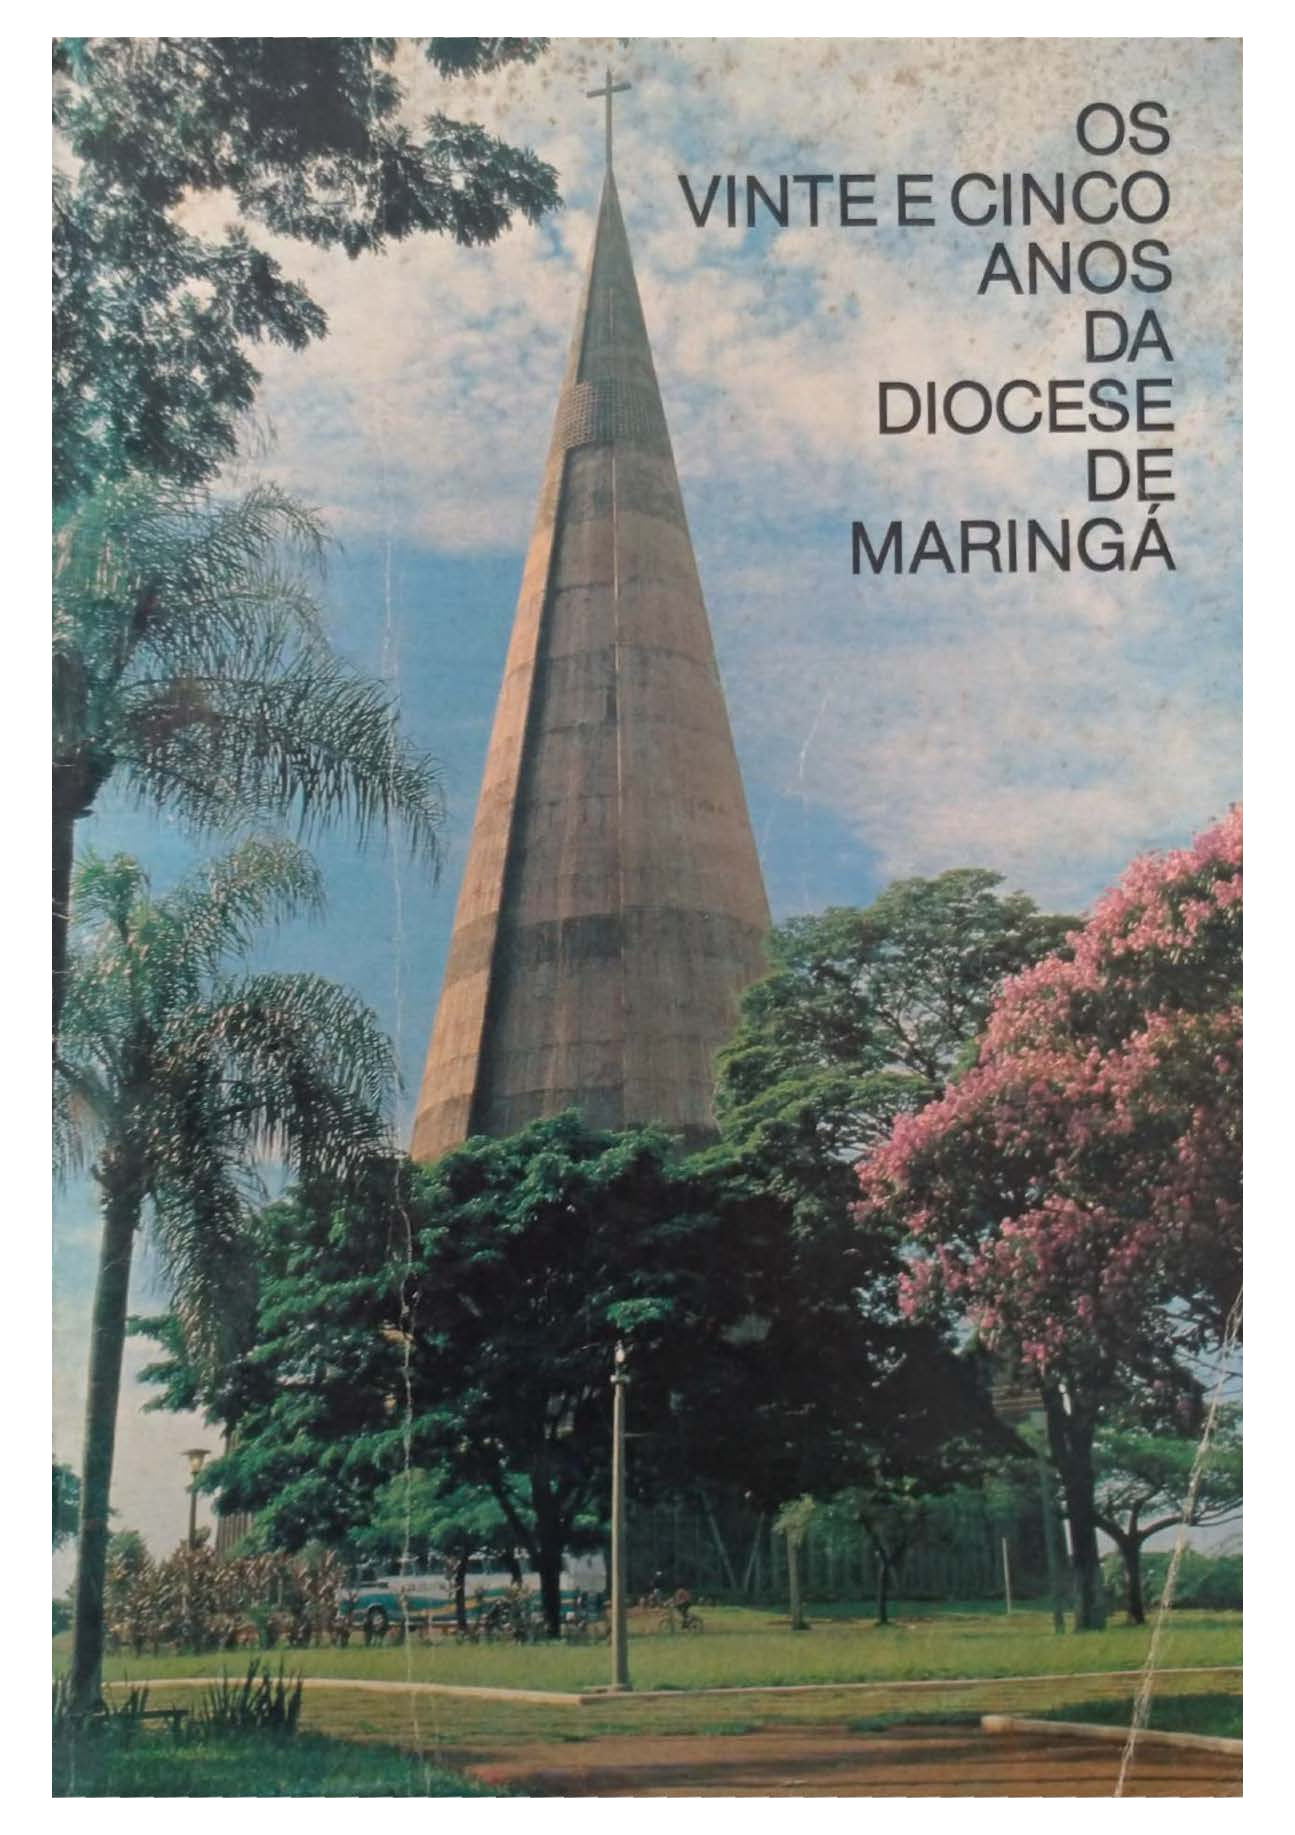 Os 25 anos da Diocese de Maringá - 1982